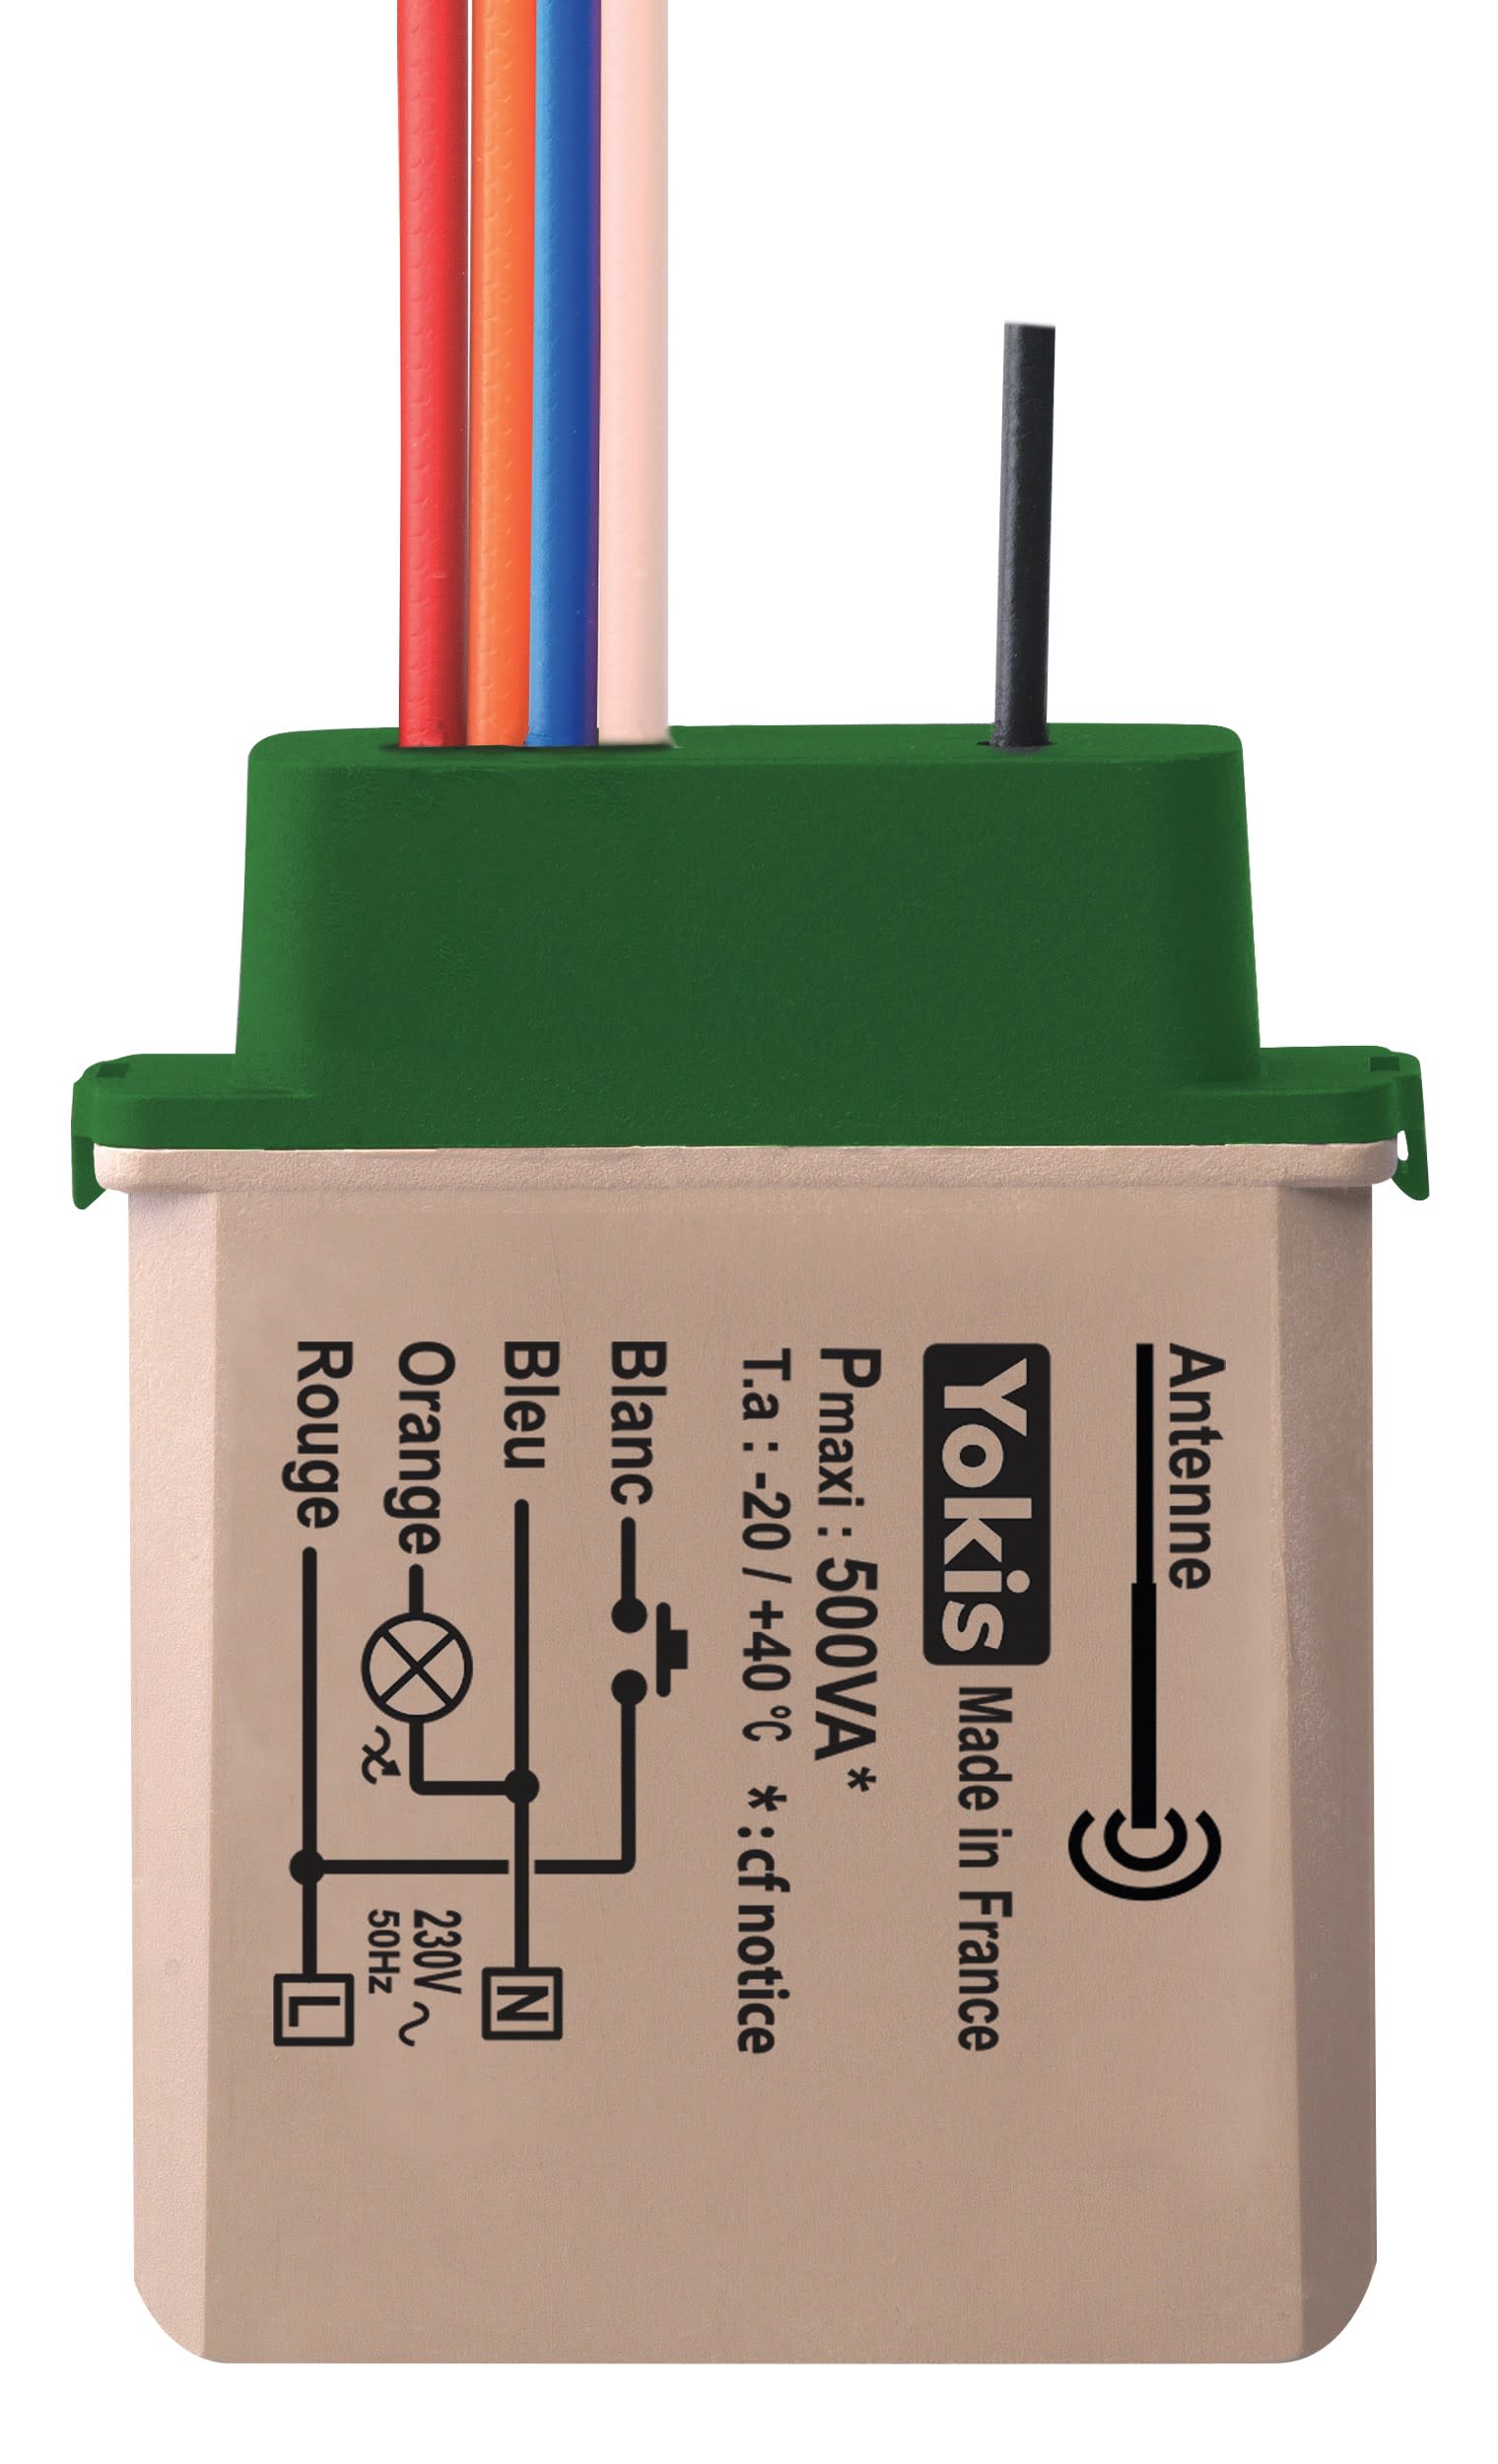 Easy Plug E16EM Prise connectee E (FR), 16A, avec mesure de